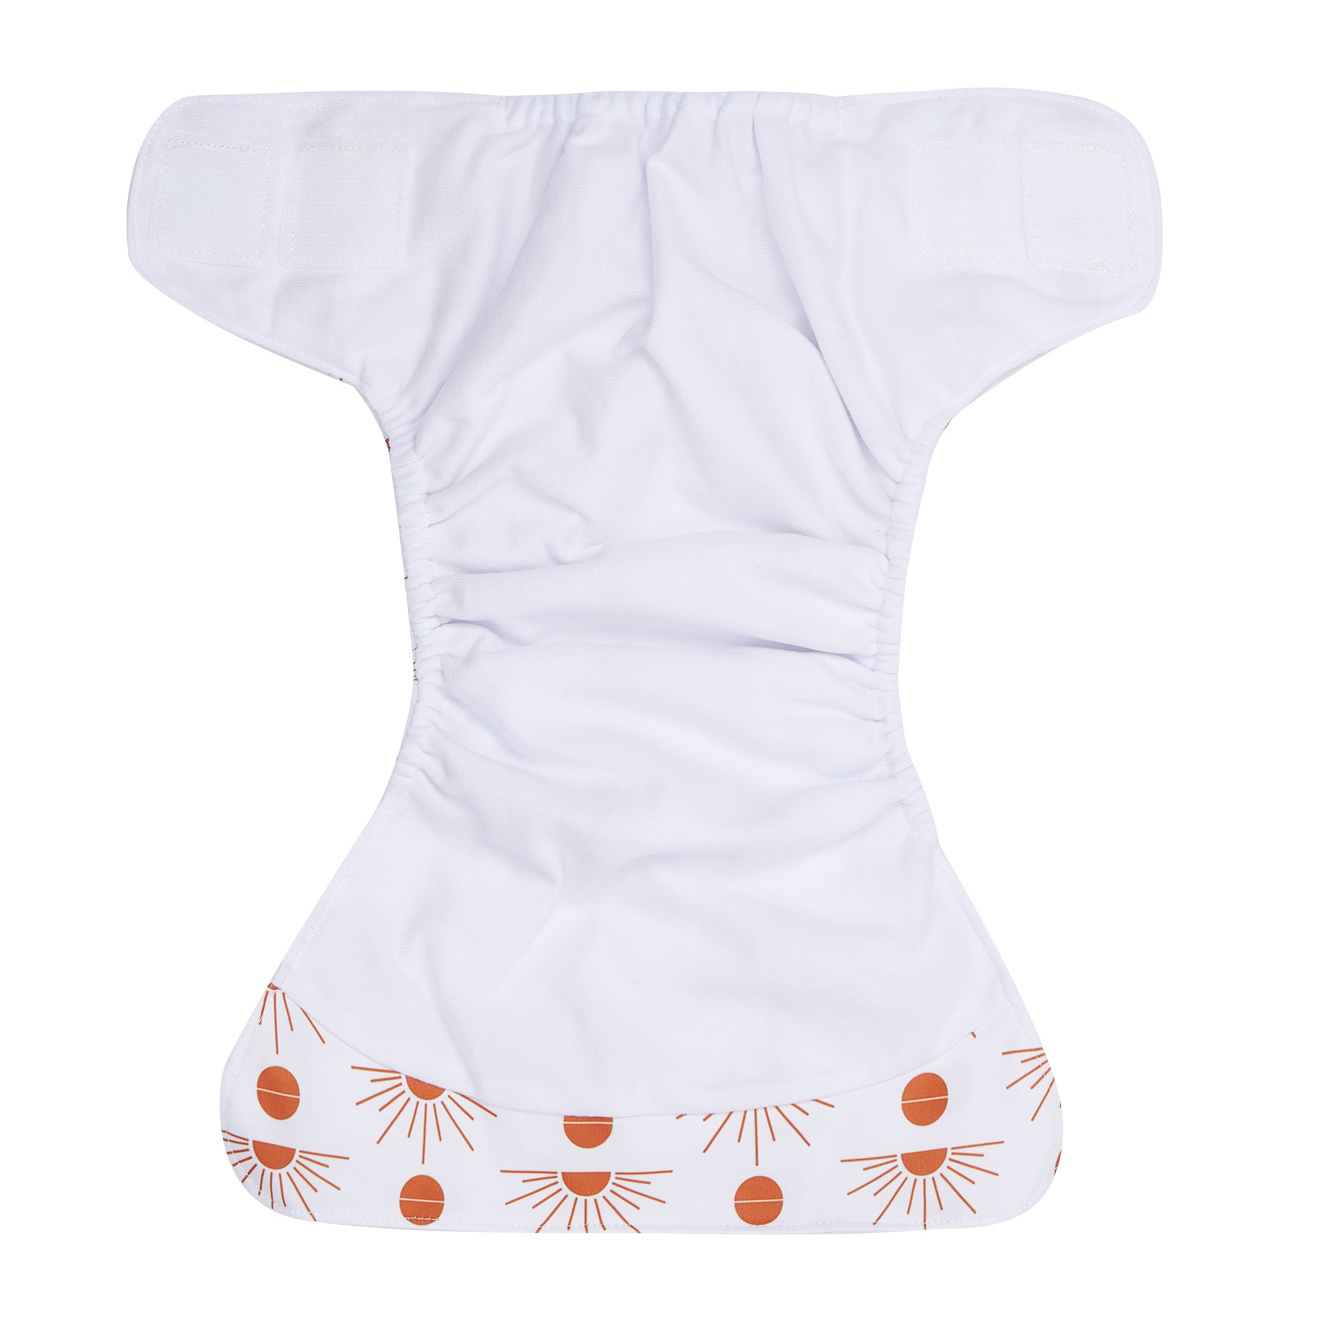 Pañal lavable para bebé, 4 Uds. Pañales reutilizables de tela pañales de  tela diseño de próxima generación